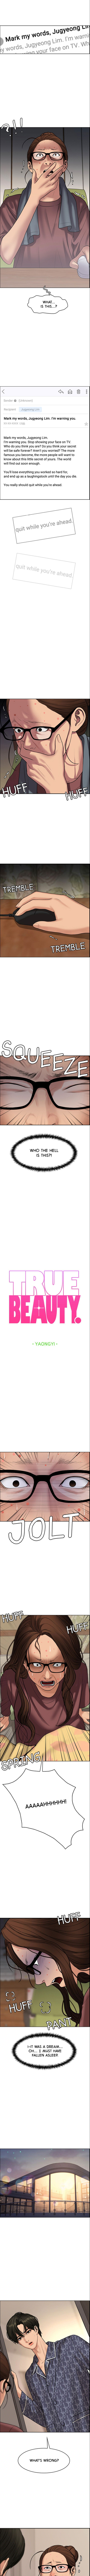 True Beauty 215 1